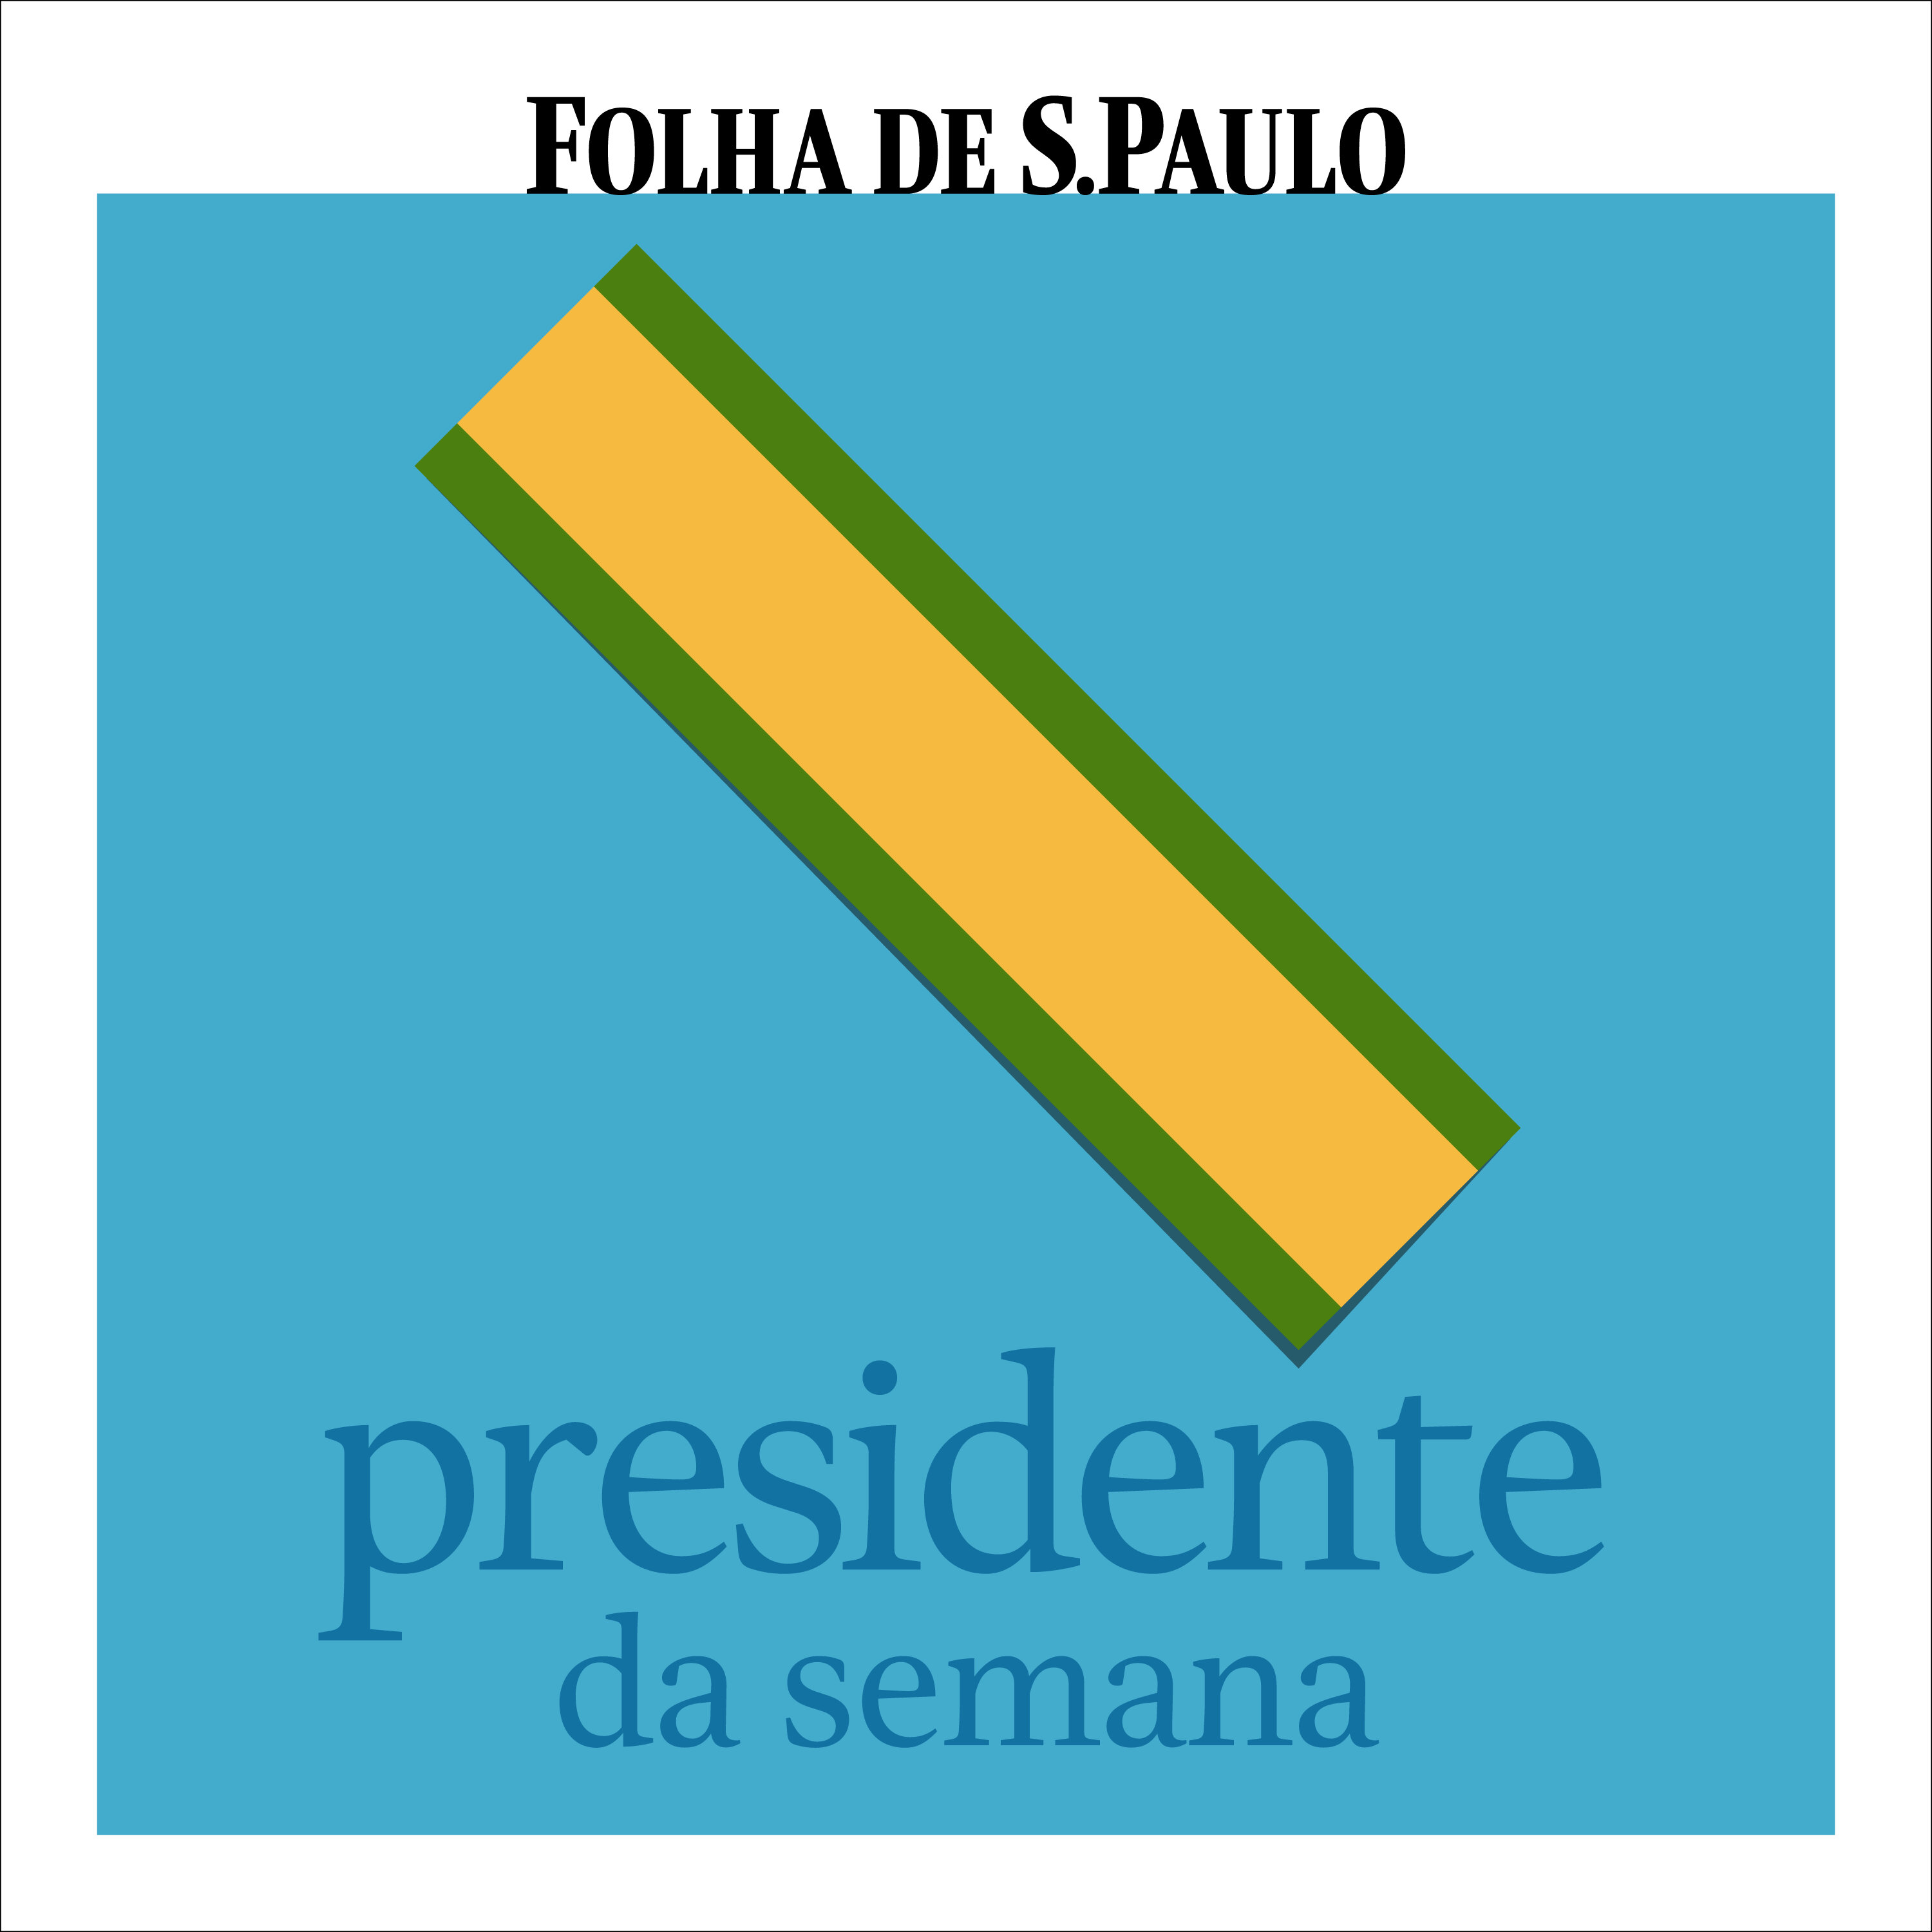 Presidente da Semana - Ep. 24 - Itamar Franco, hiperinflação e Plano Real